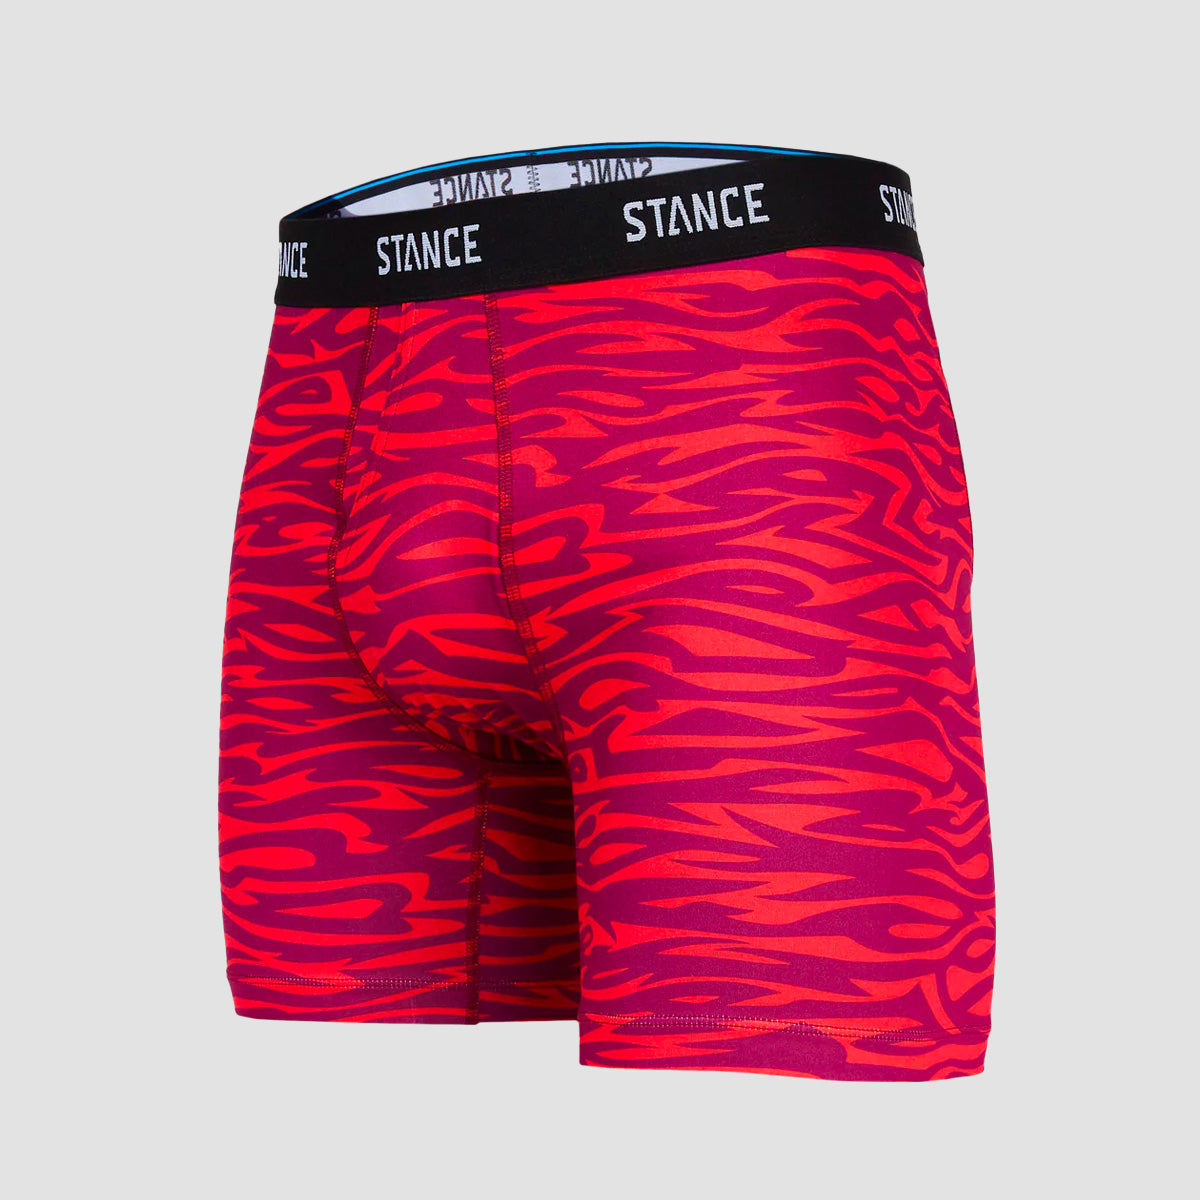 Stance Men's Boxer Shorts